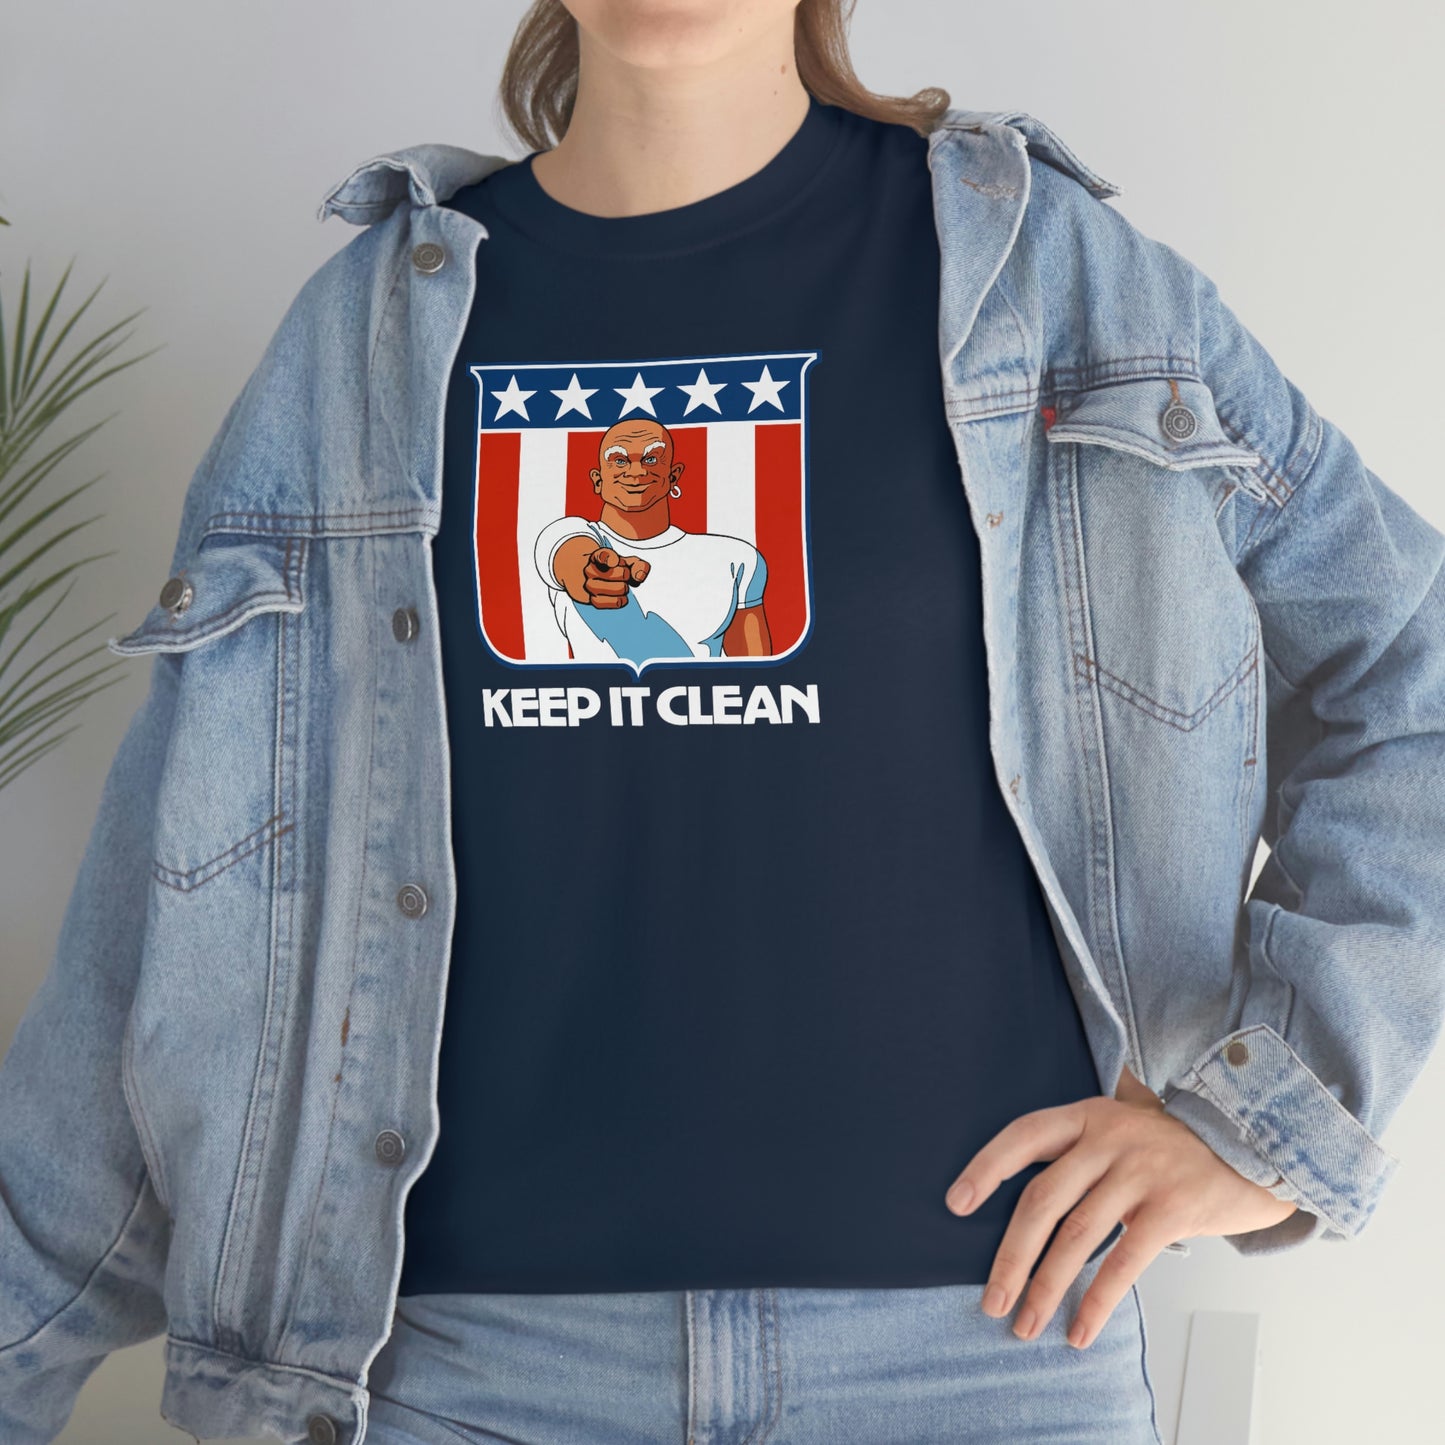 Mr. Clean T-Shirt